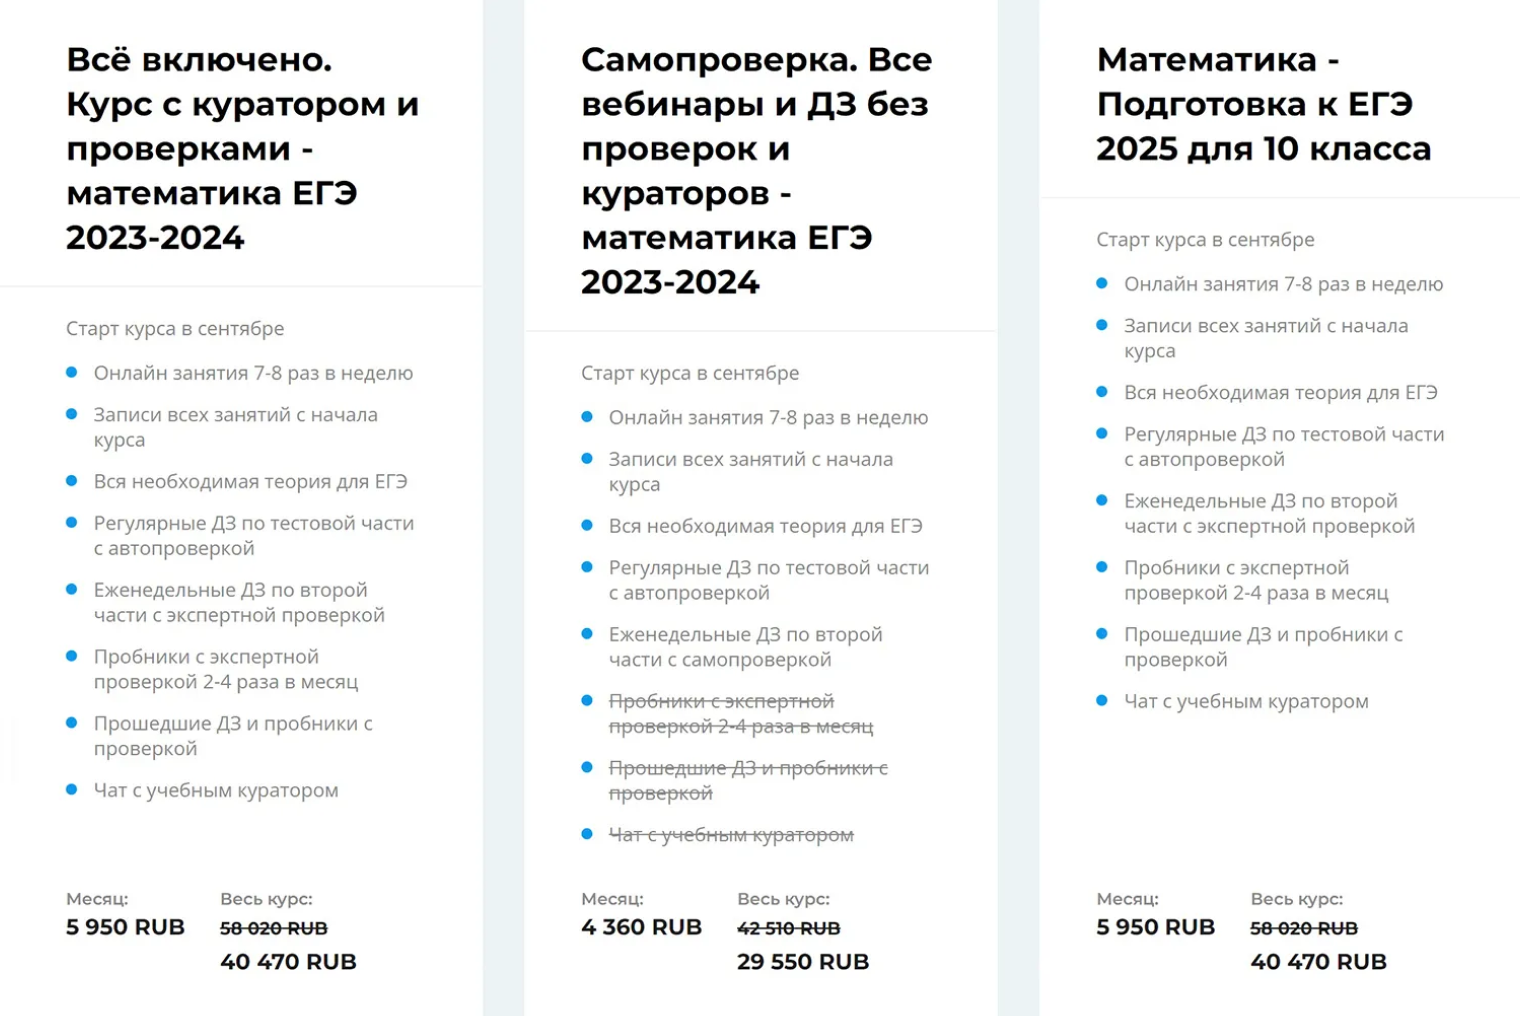 Тарифы на обучение в онлайн⁠-⁠школе «Школково» в 2023 году. За три года цены выросли. Источник: shkolkovo.online